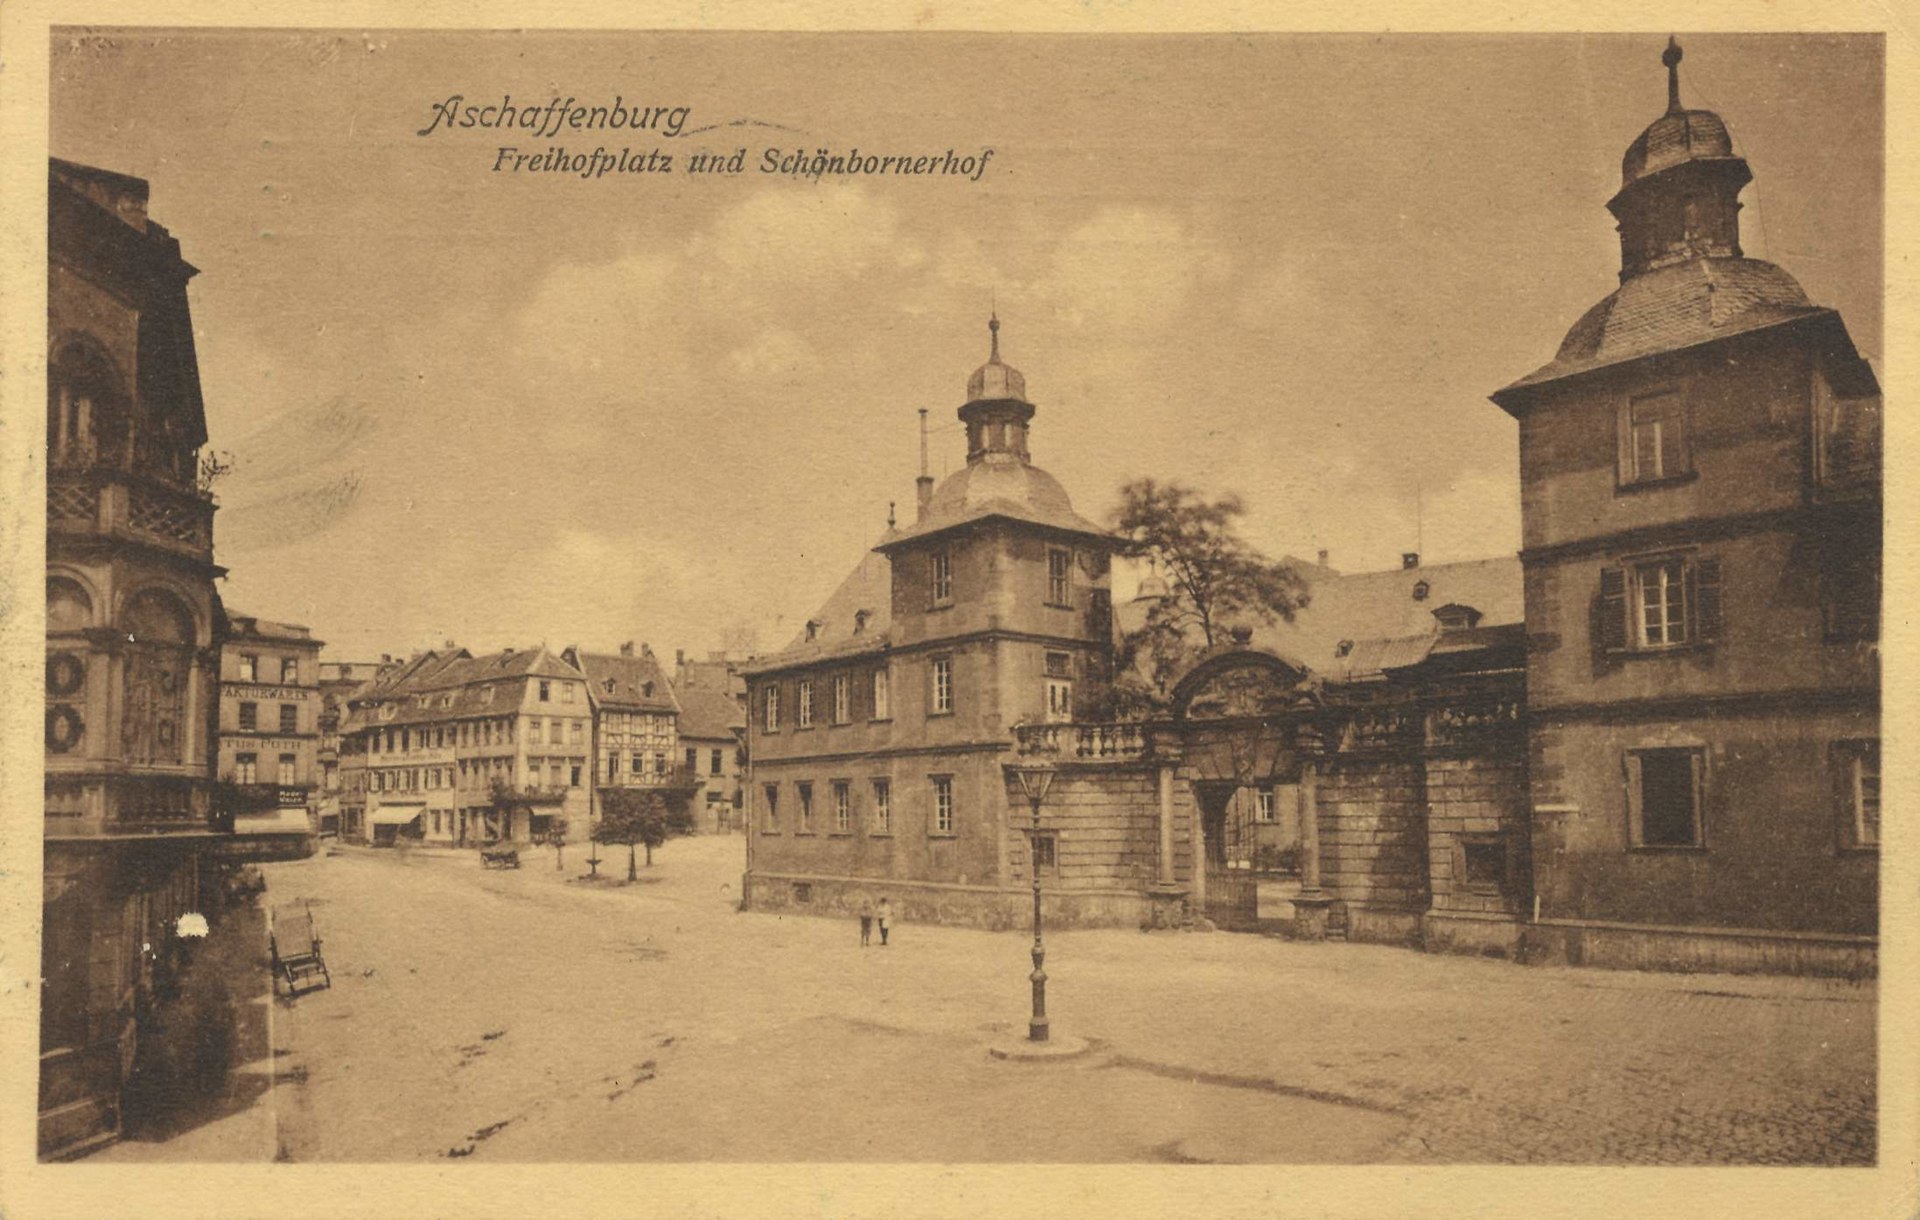 Aschaffenburg, Bayern - Freihofplatz und Schönbornerhof (Zeno Ansichtskarten).jpg